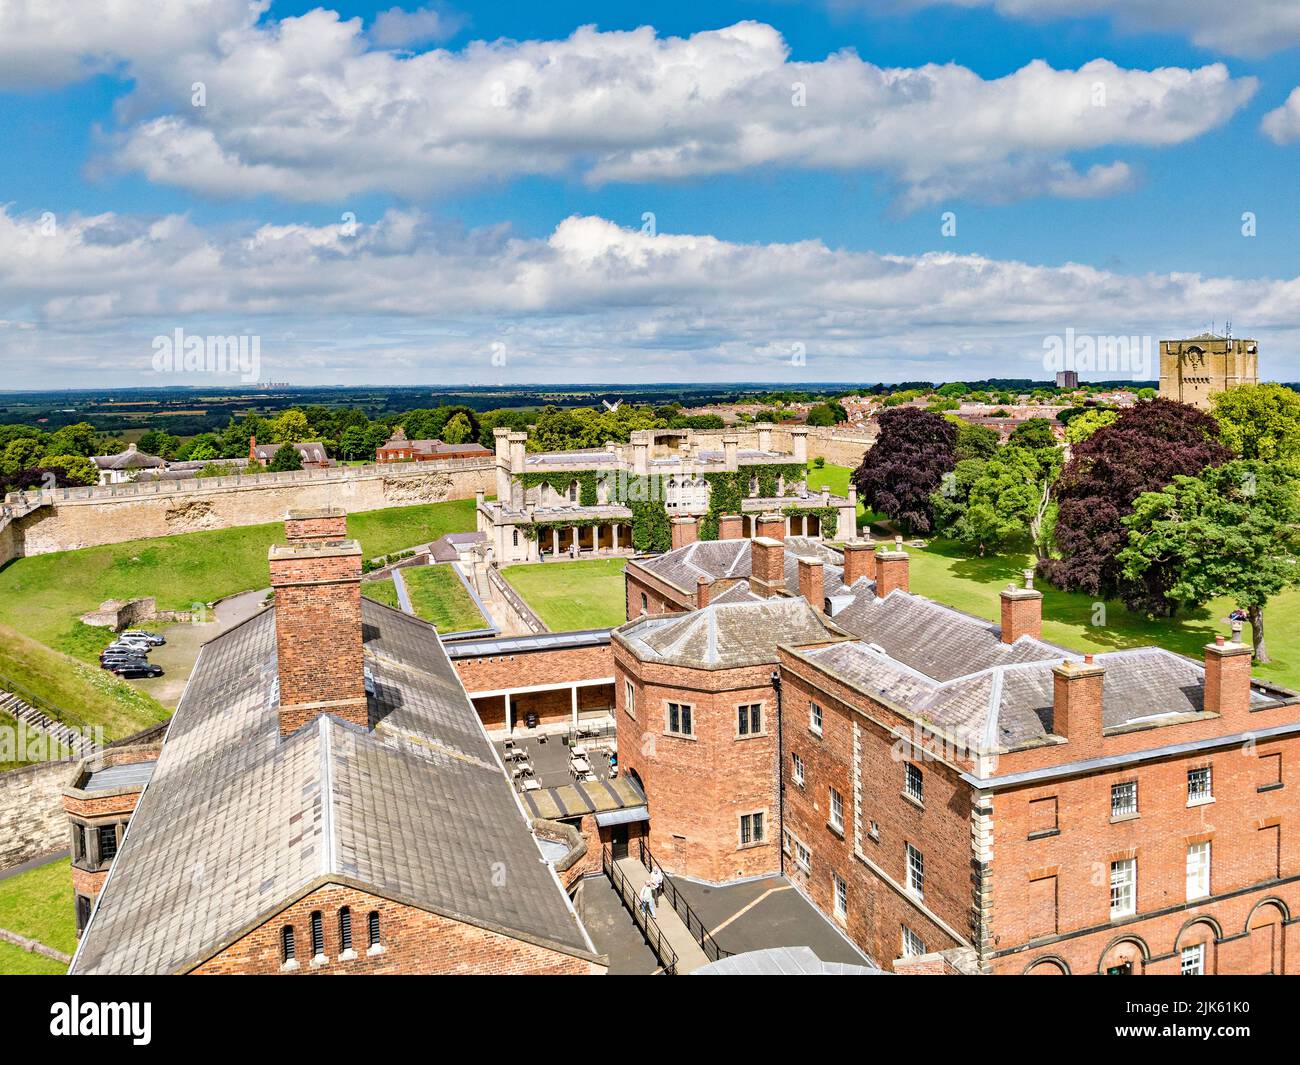 2 juillet 2019: Lincoln, Royaume-Uni - Une vue de l'ancienne prison depuis les murs du château, avec le bâtiment de la cour de la Couronne, et une vue lointaine sur les loups de Lincoln. Banque D'Images